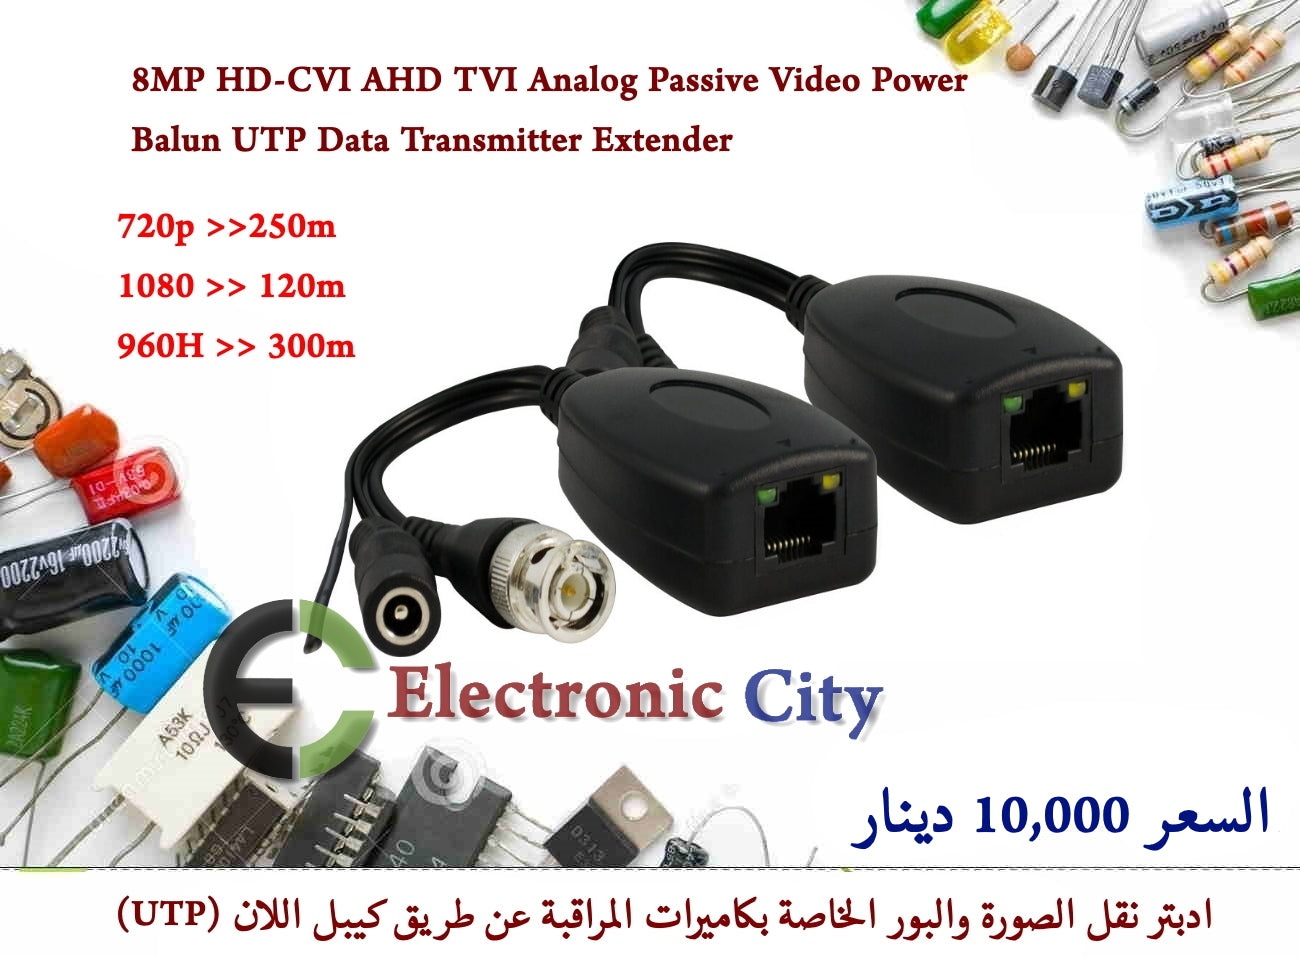 8MP HD-CVI AHD TVI Analog Passive Video Power Balun UTP Data Transmitter Extender